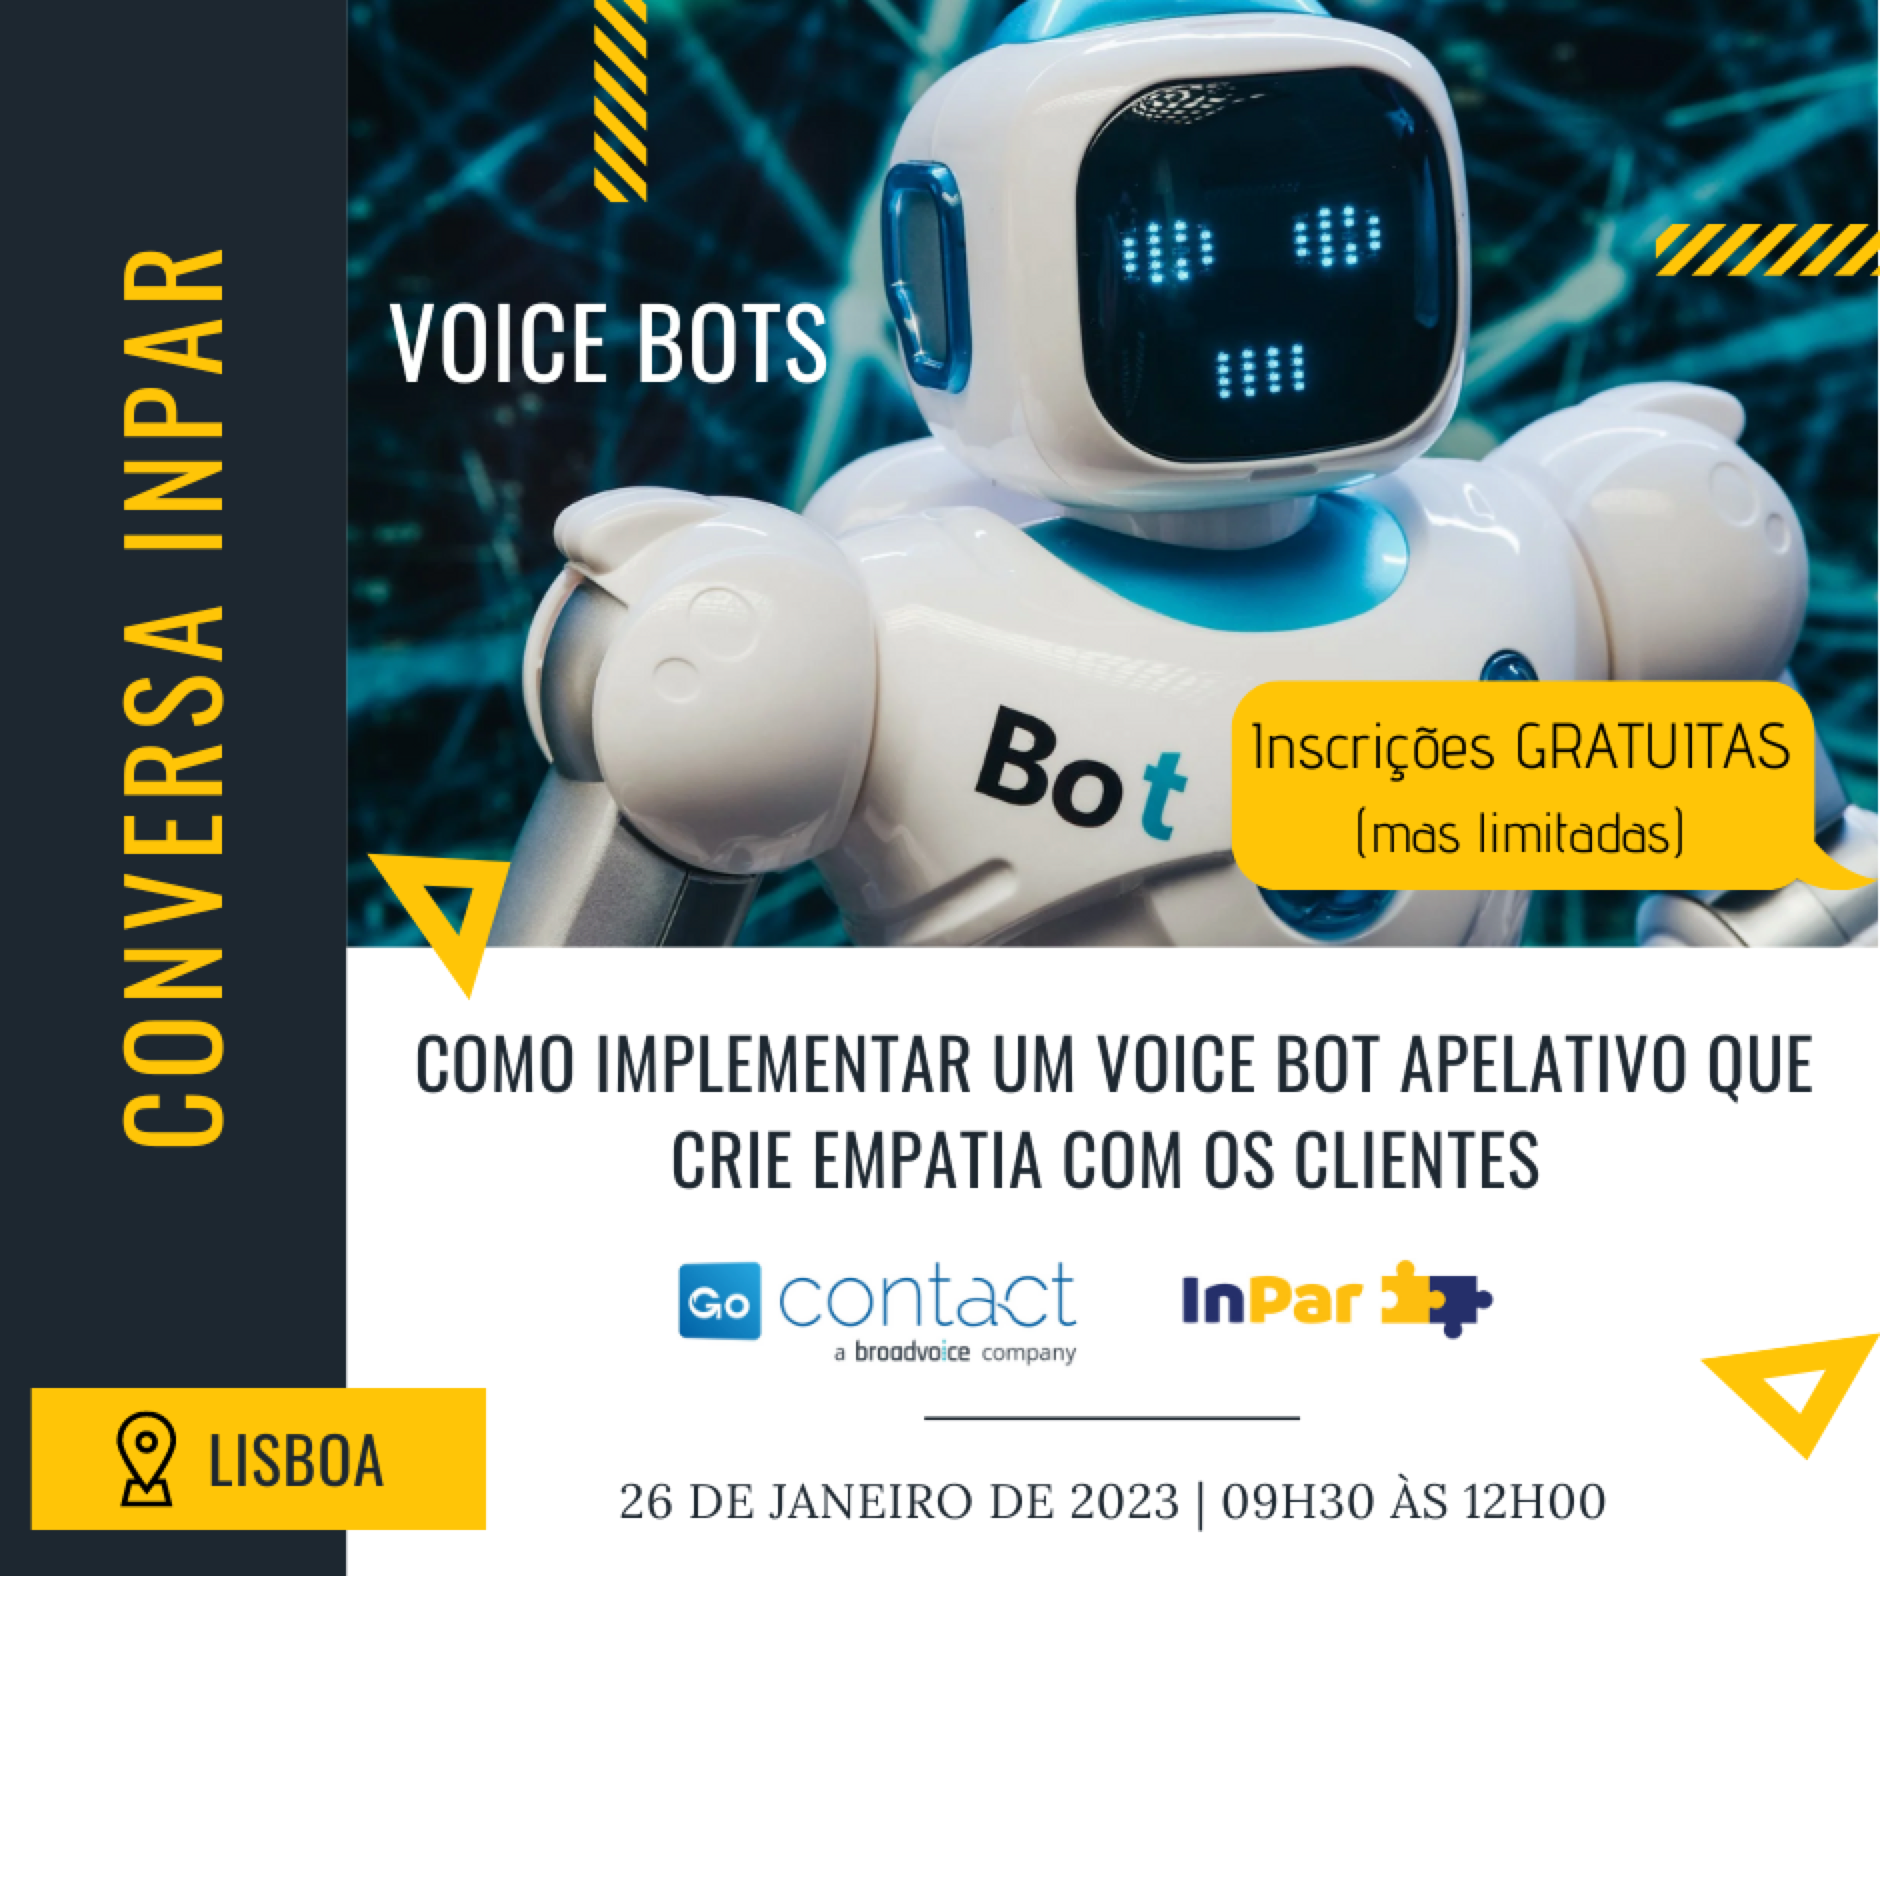 Voice Bots